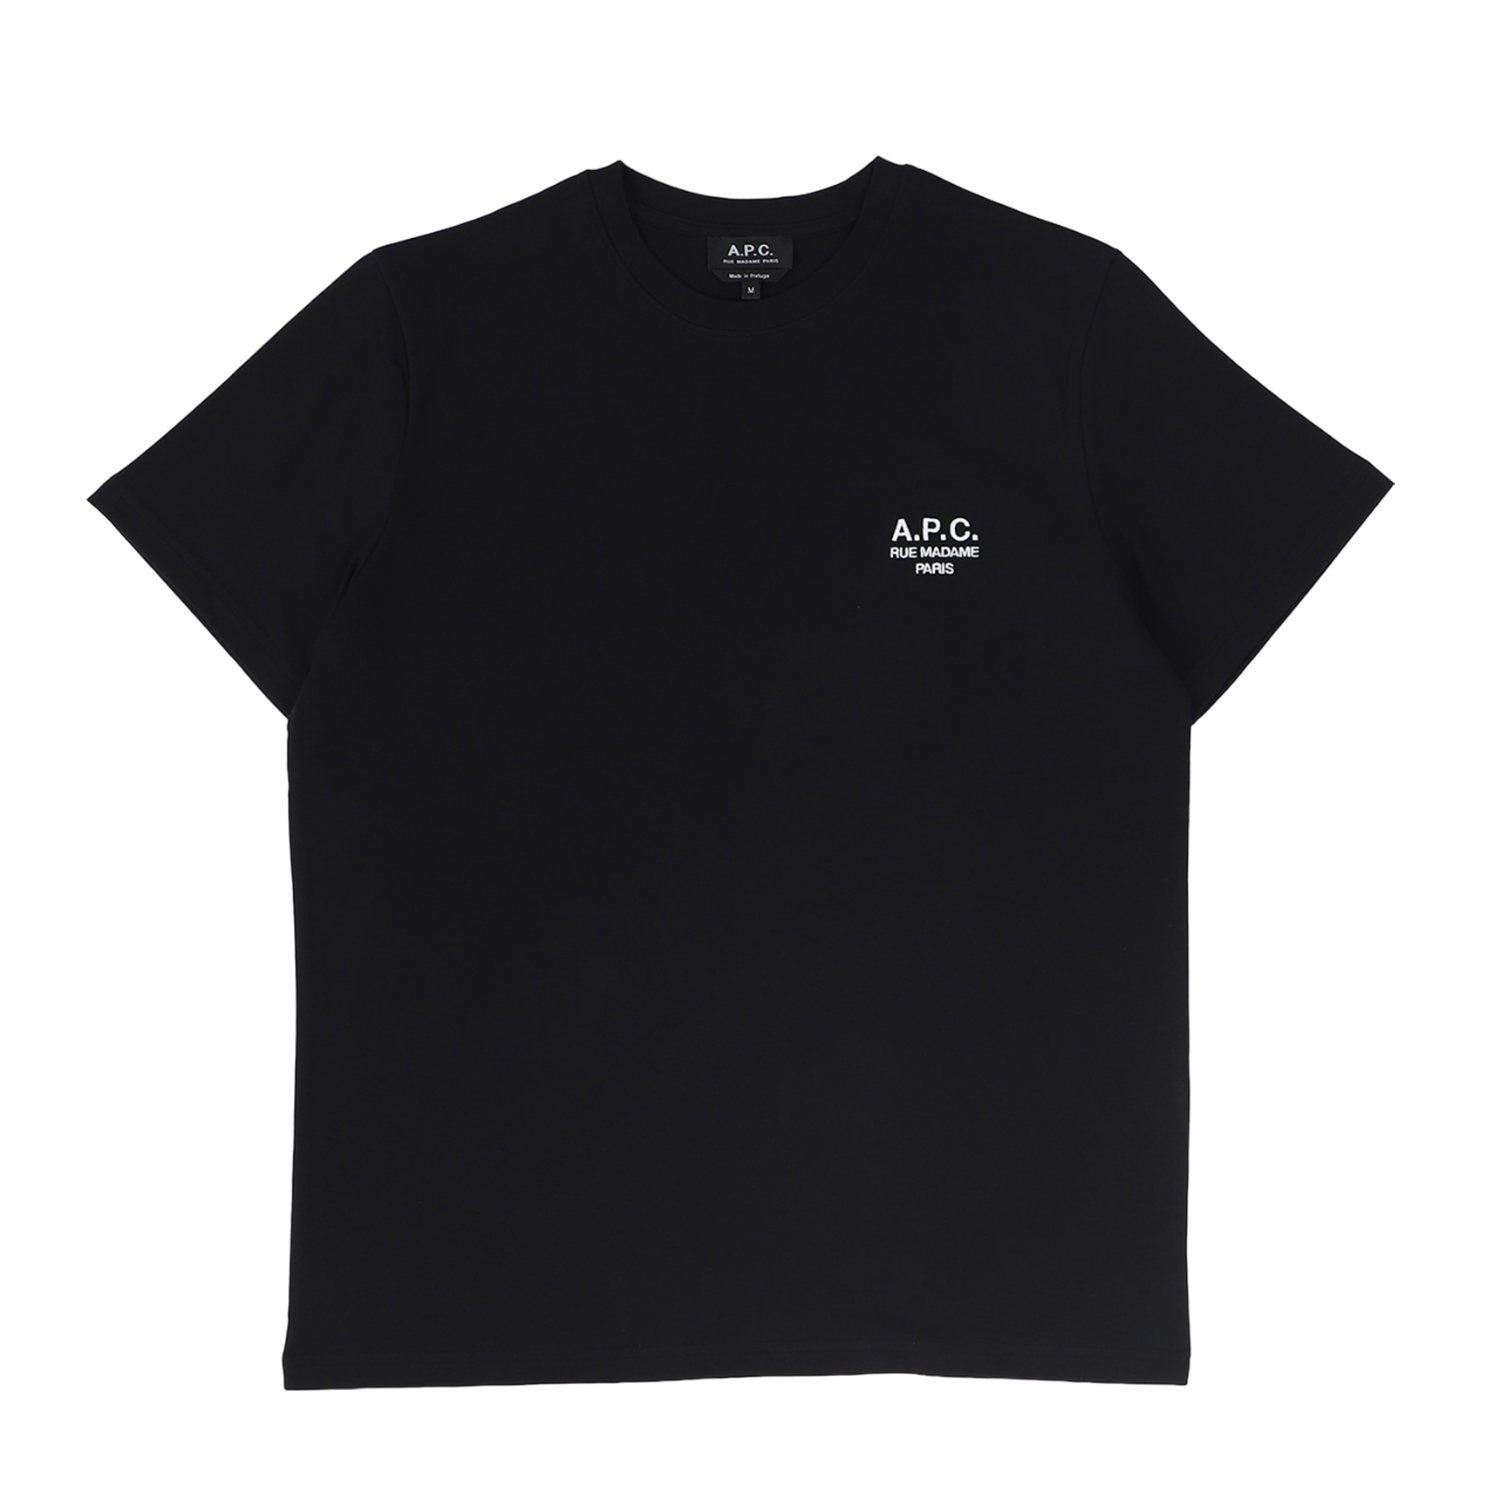 A.P.C. Tシャツ メンズ RAYMOND ブラック ホワイト 黒 白 COEZC-H26840...